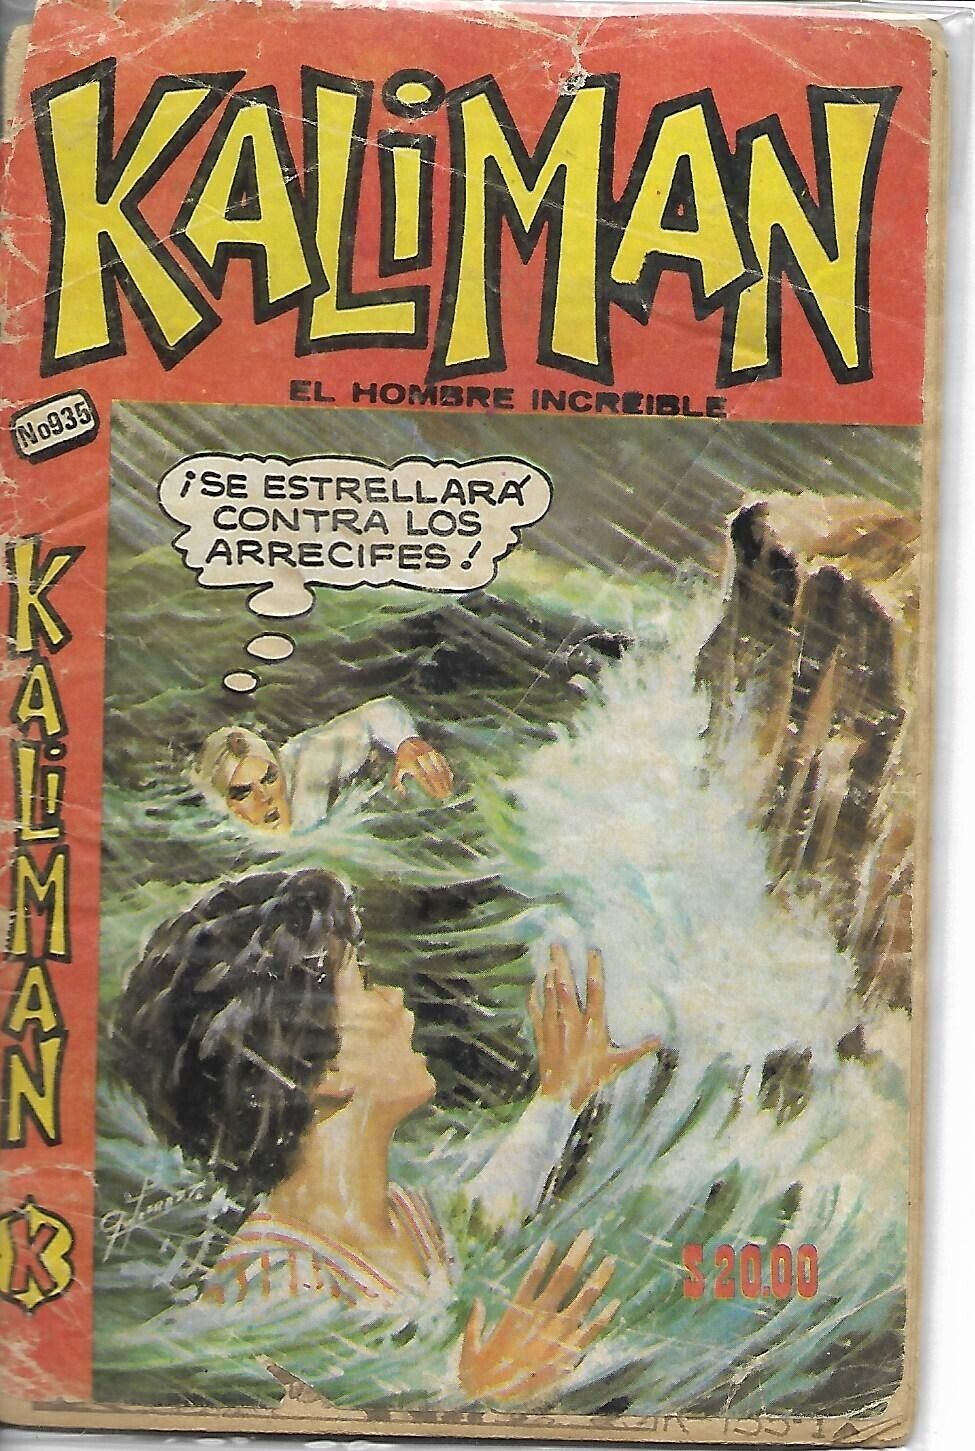 Kaliman El Hombre Increible #935 - Octubre 28, 1983 - Mexico